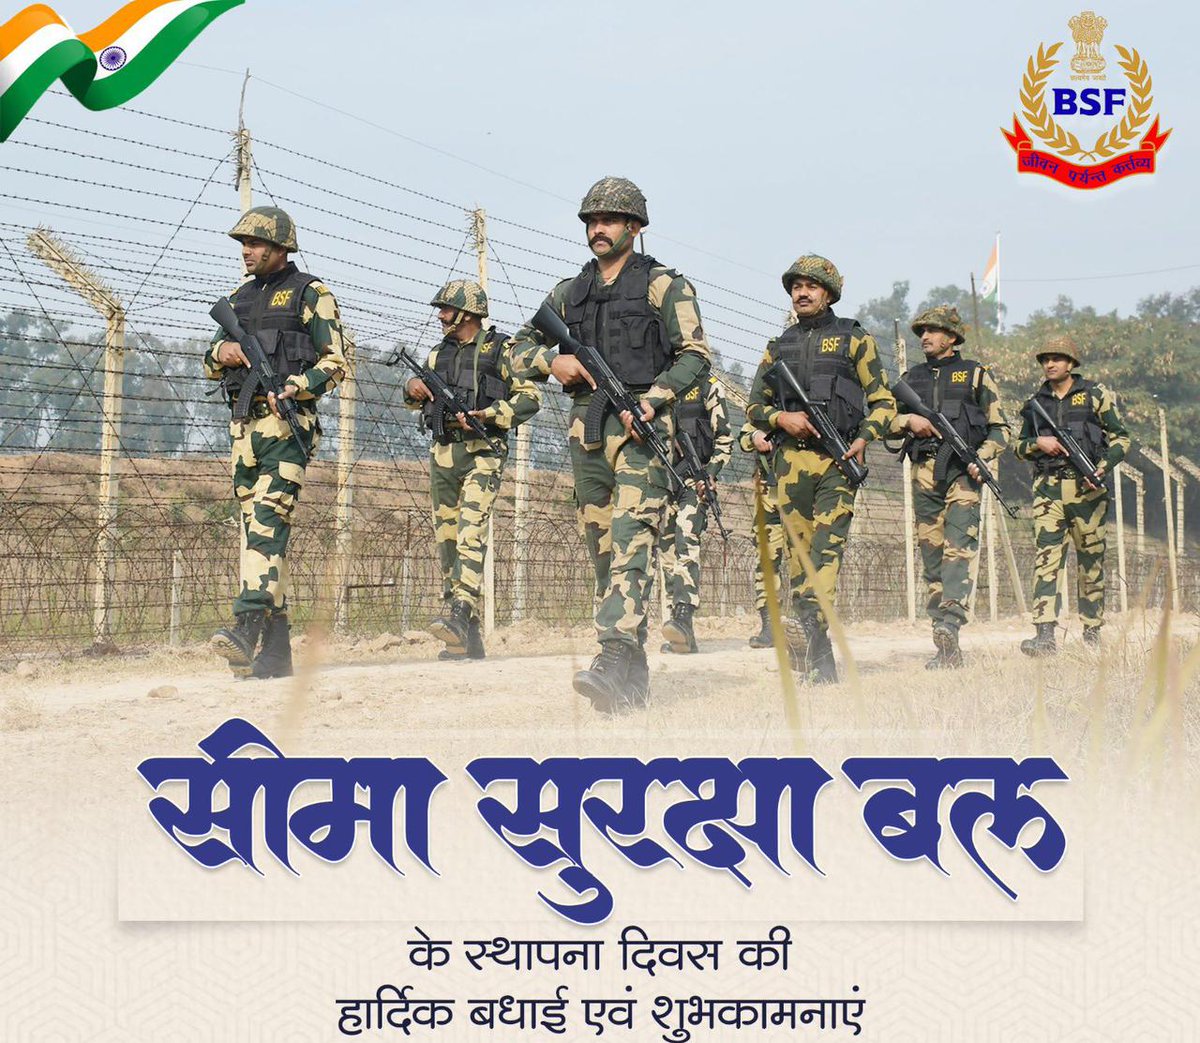 देश की सीमाओं की सुरक्षा में समर्पित सीमा सुरक्षा बल के स्थापना दिवस की हार्दिक बधाई एवं शुभकामनाएं।

#BSFRaisingDay2023